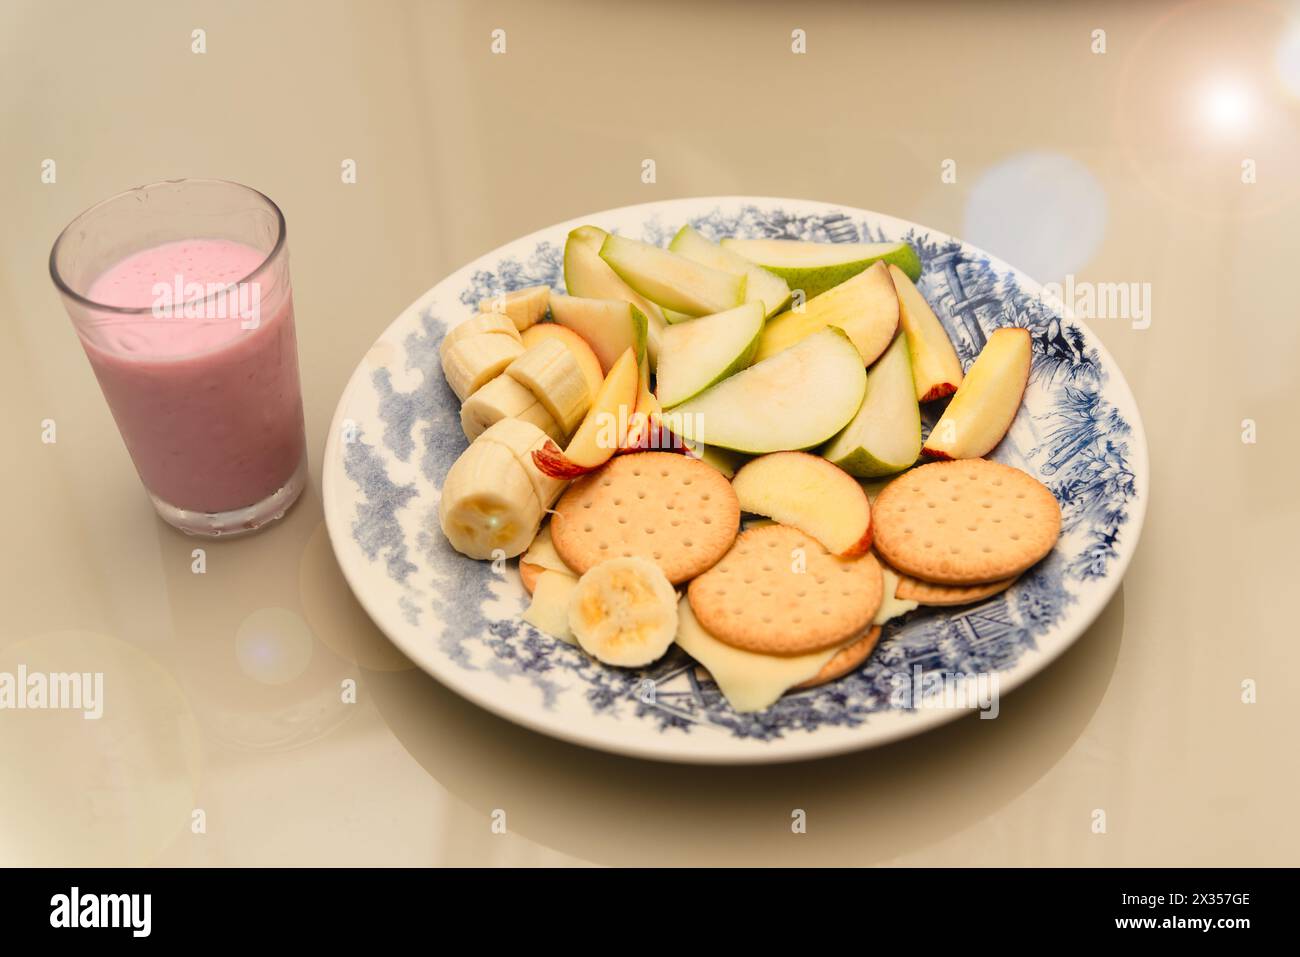 Teller mit Banane, Apfel, Birne, Keksen, Käse und Joghurt. Gesundes Frühstück. Diät Stockfoto